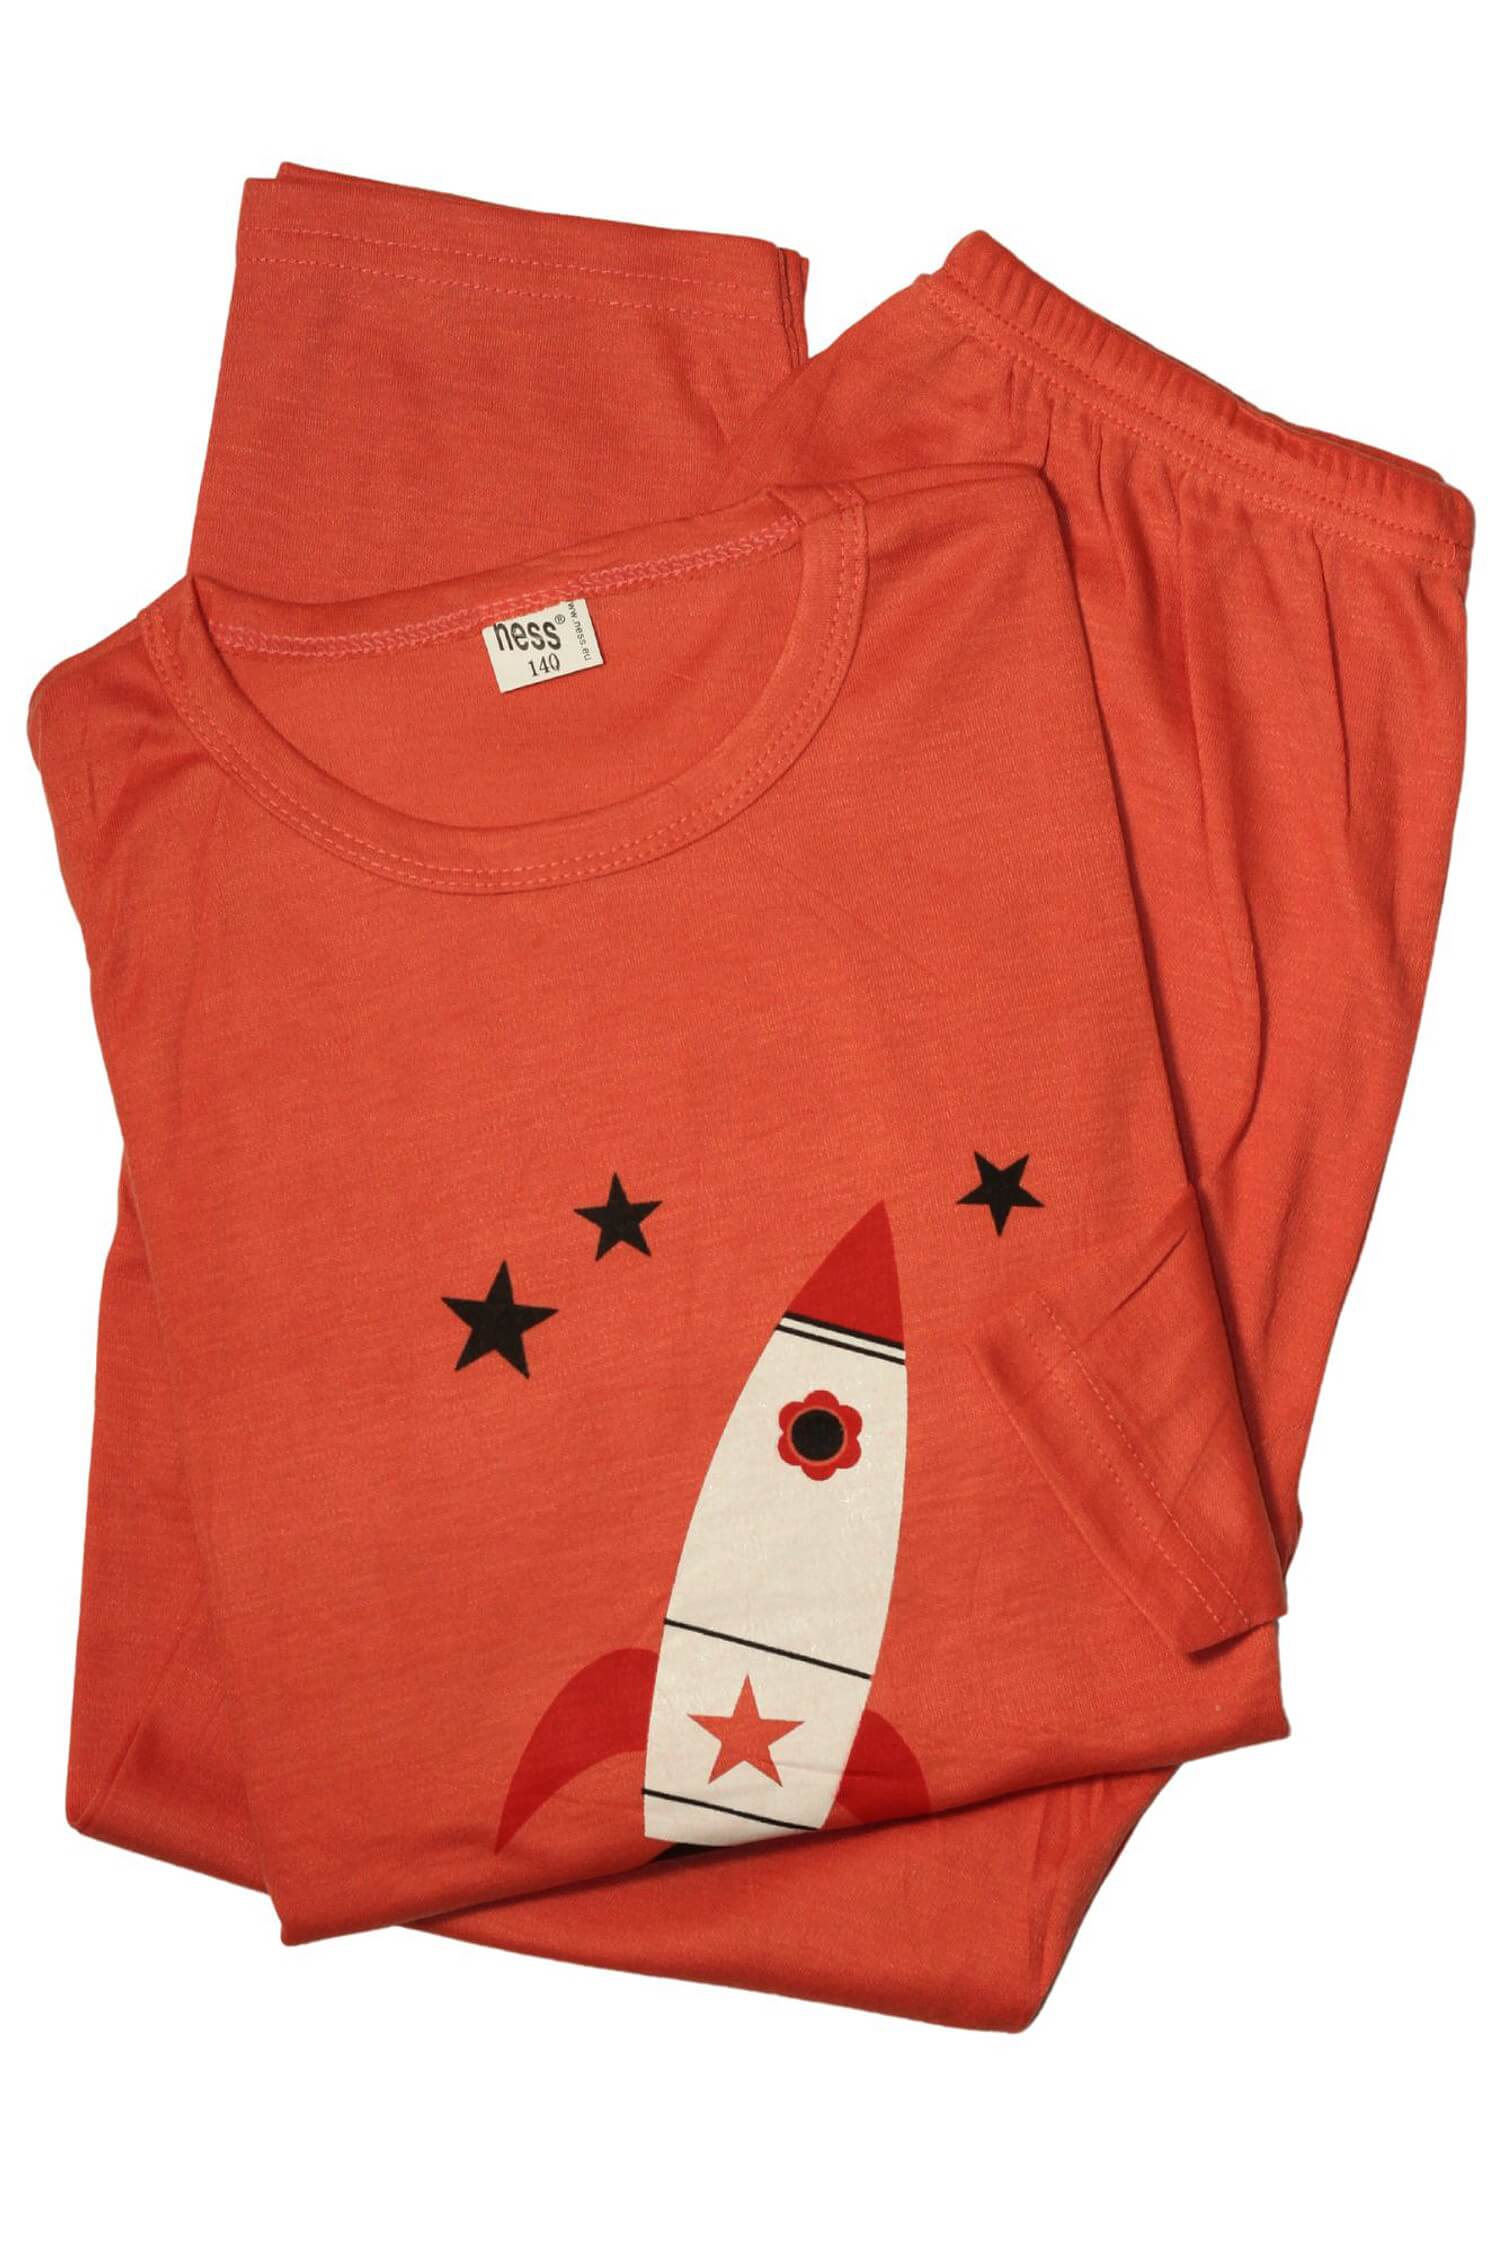 Rocket dětské pyžamo 158 7-8 let oranžová